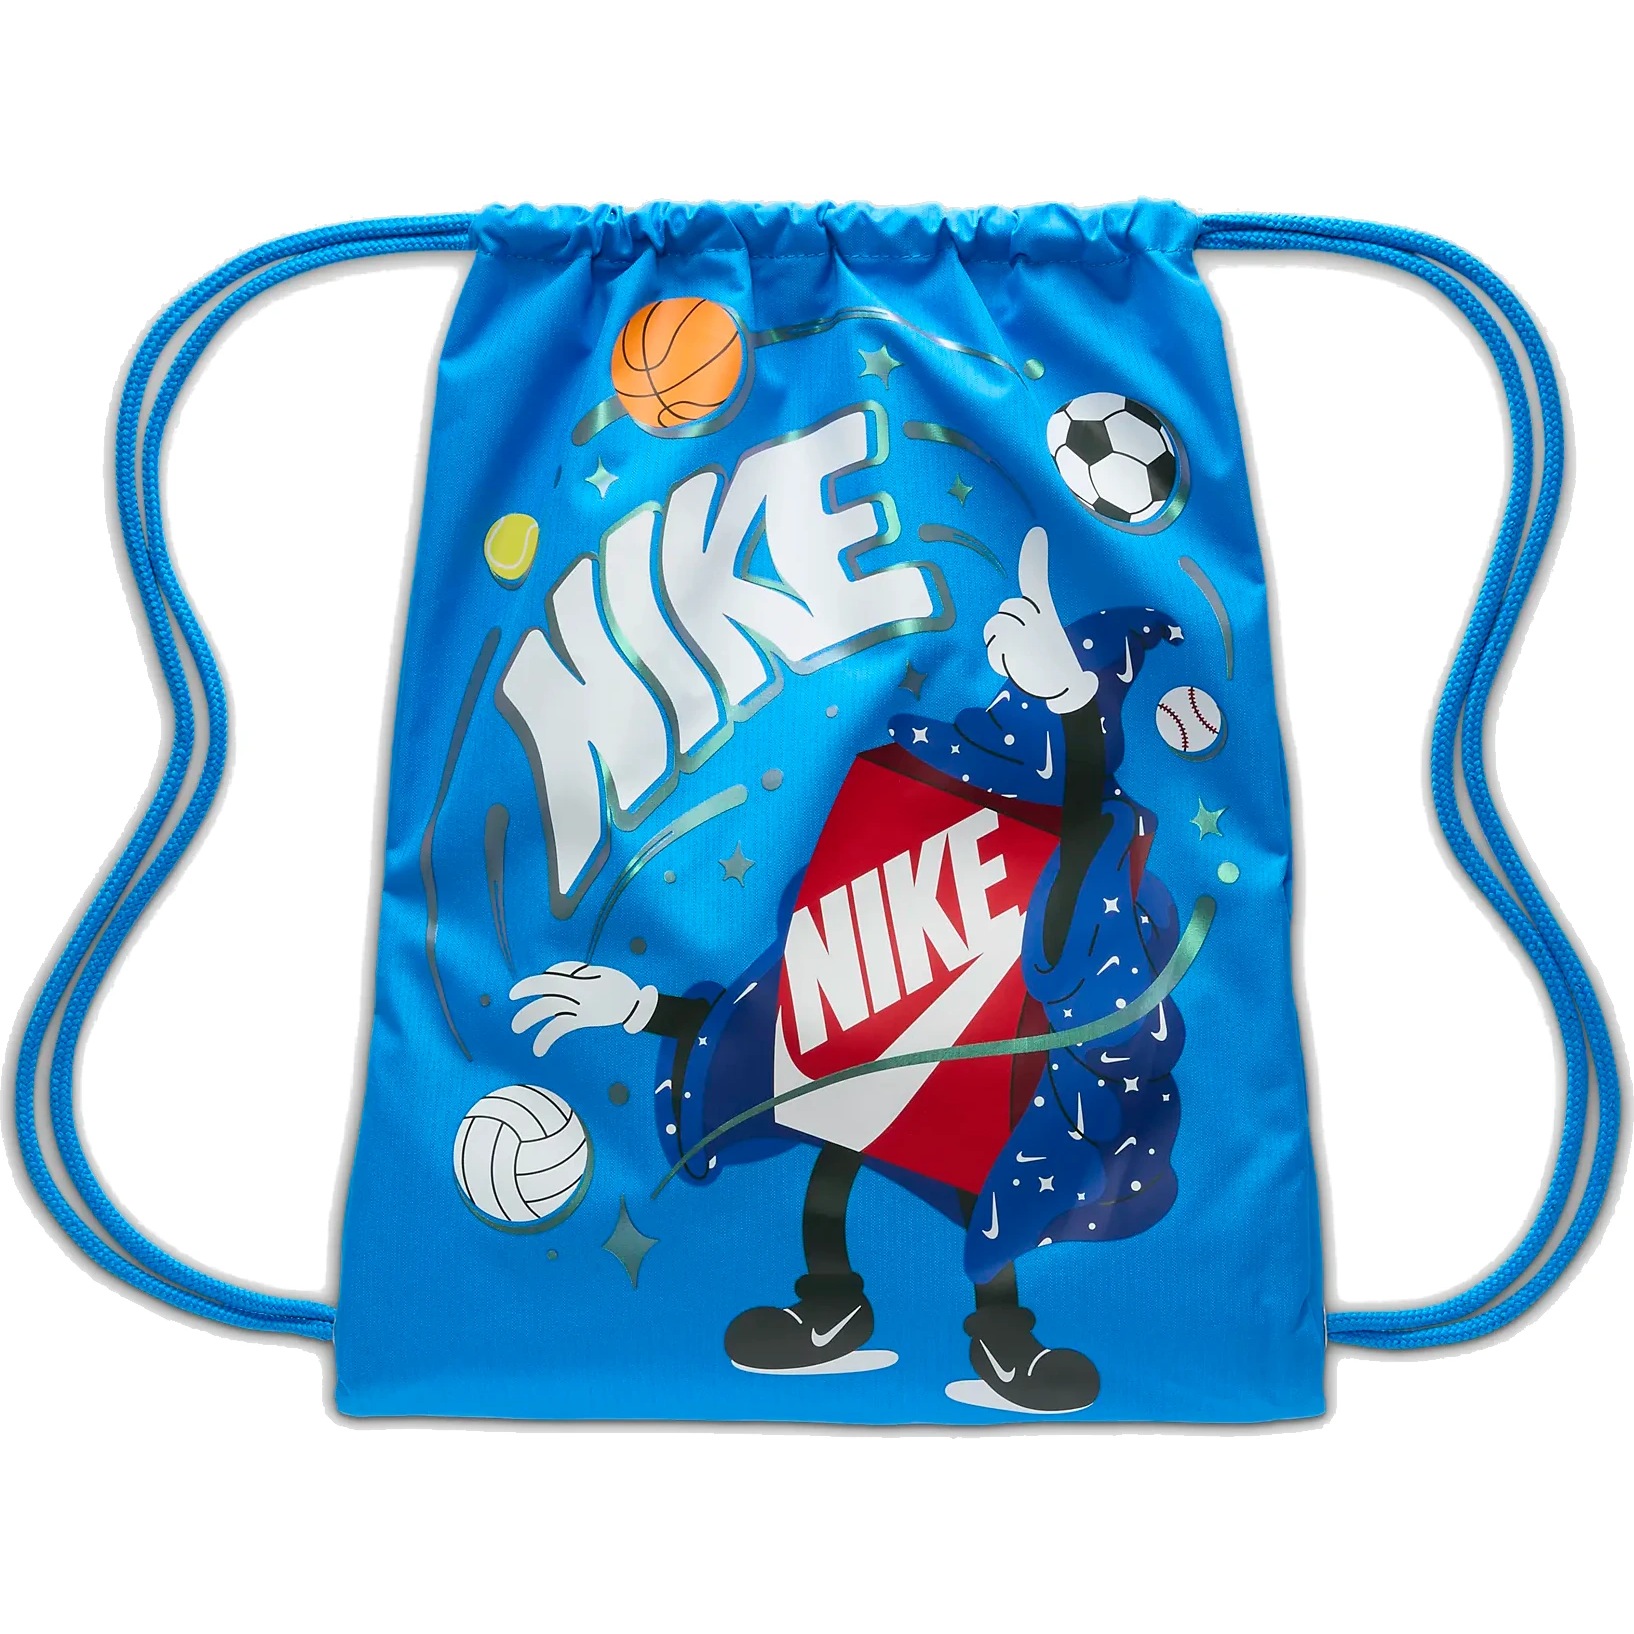 Produktbild von Nike Turnbeutel Kinder (12L) - Boxy - photo blue FN1360-406